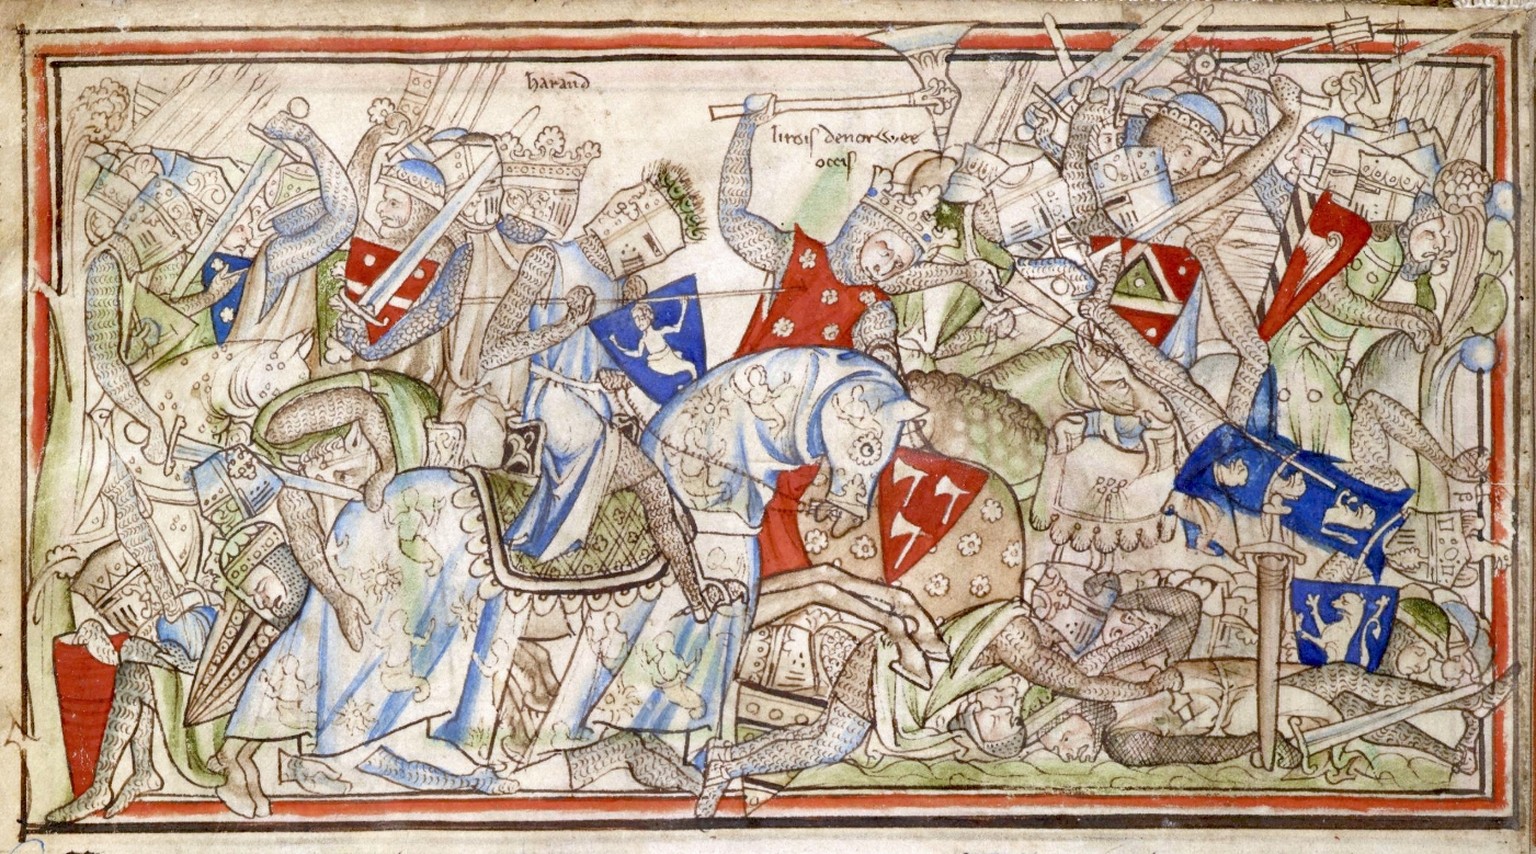 Die Schlacht von Stamford Bridge, dargestellt in der Vita Eduards des Bekenners aus dem 13. Jahrhundert.
https://de.wikipedia.org/wiki/Schlacht_von_Stamford_Bridge#/media/Datei:Battle_of_Stamford_Brid ...